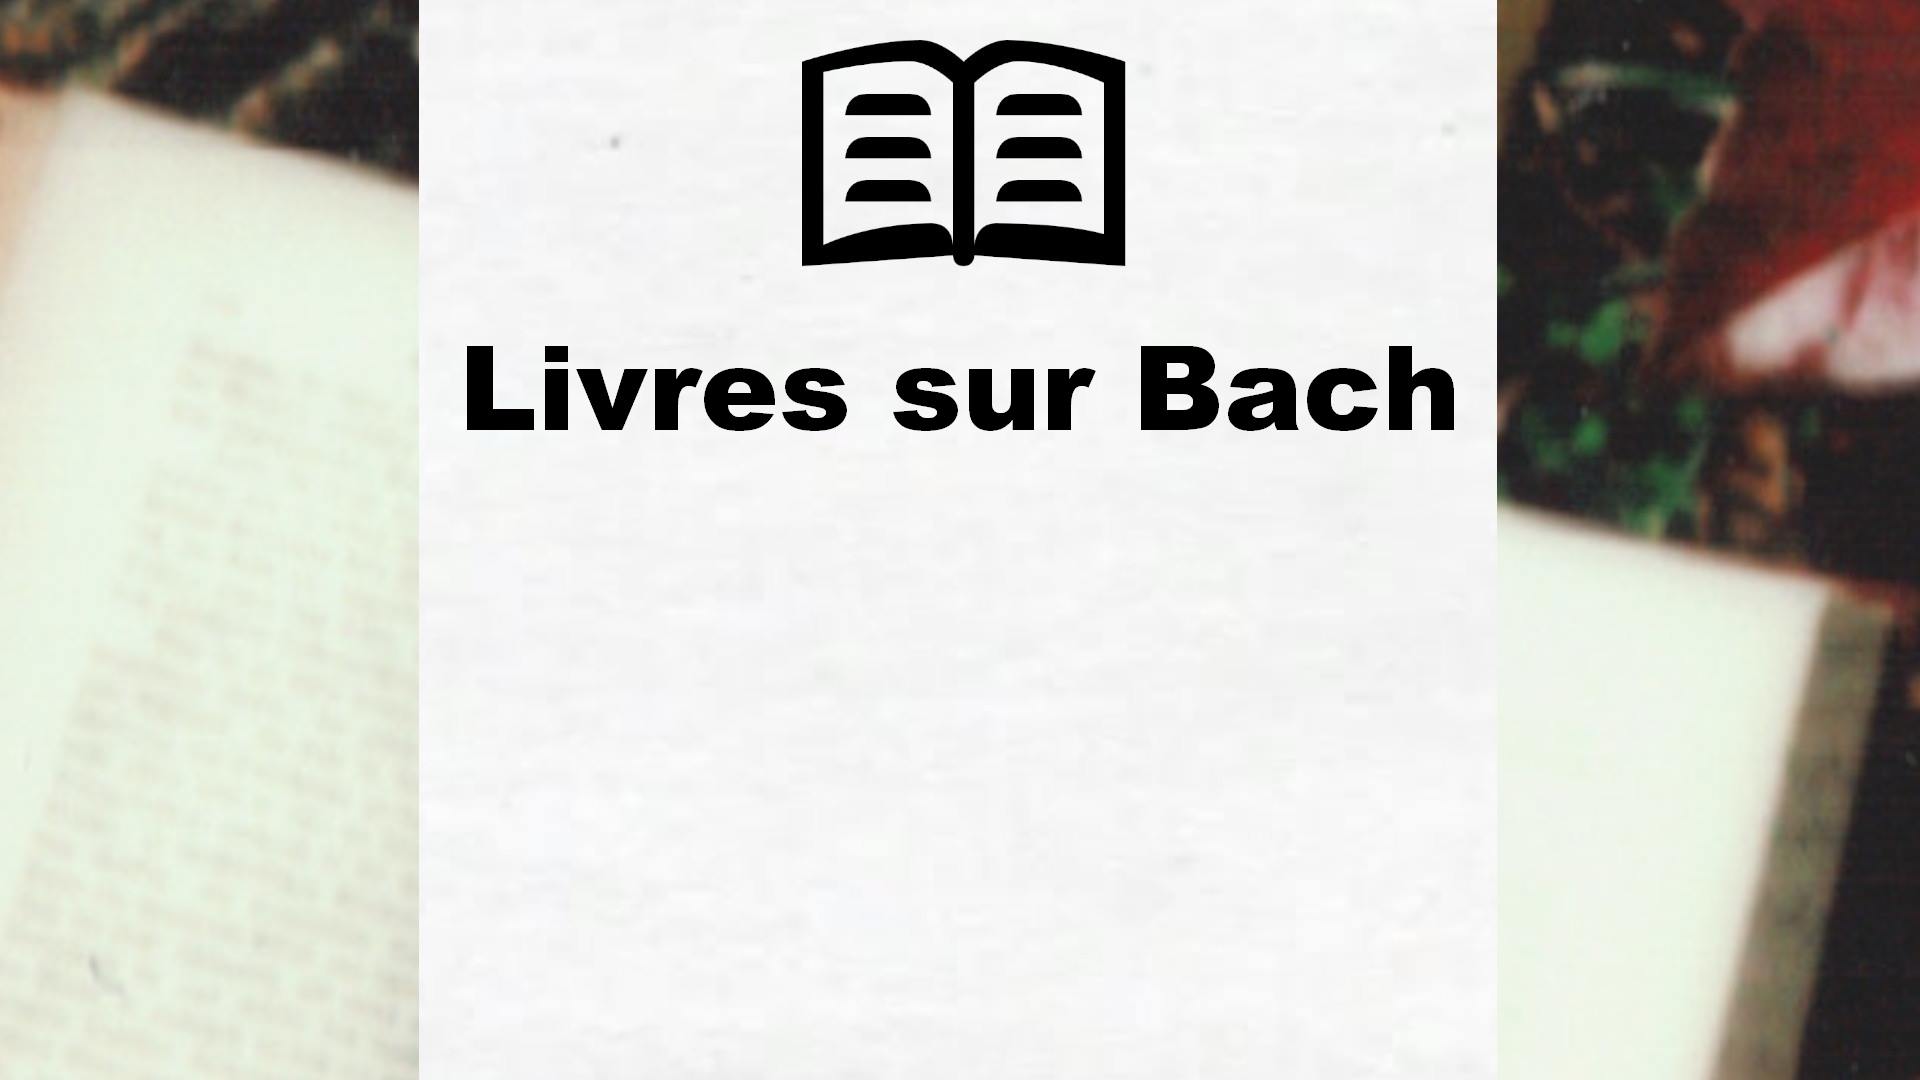 Livres sur Bach